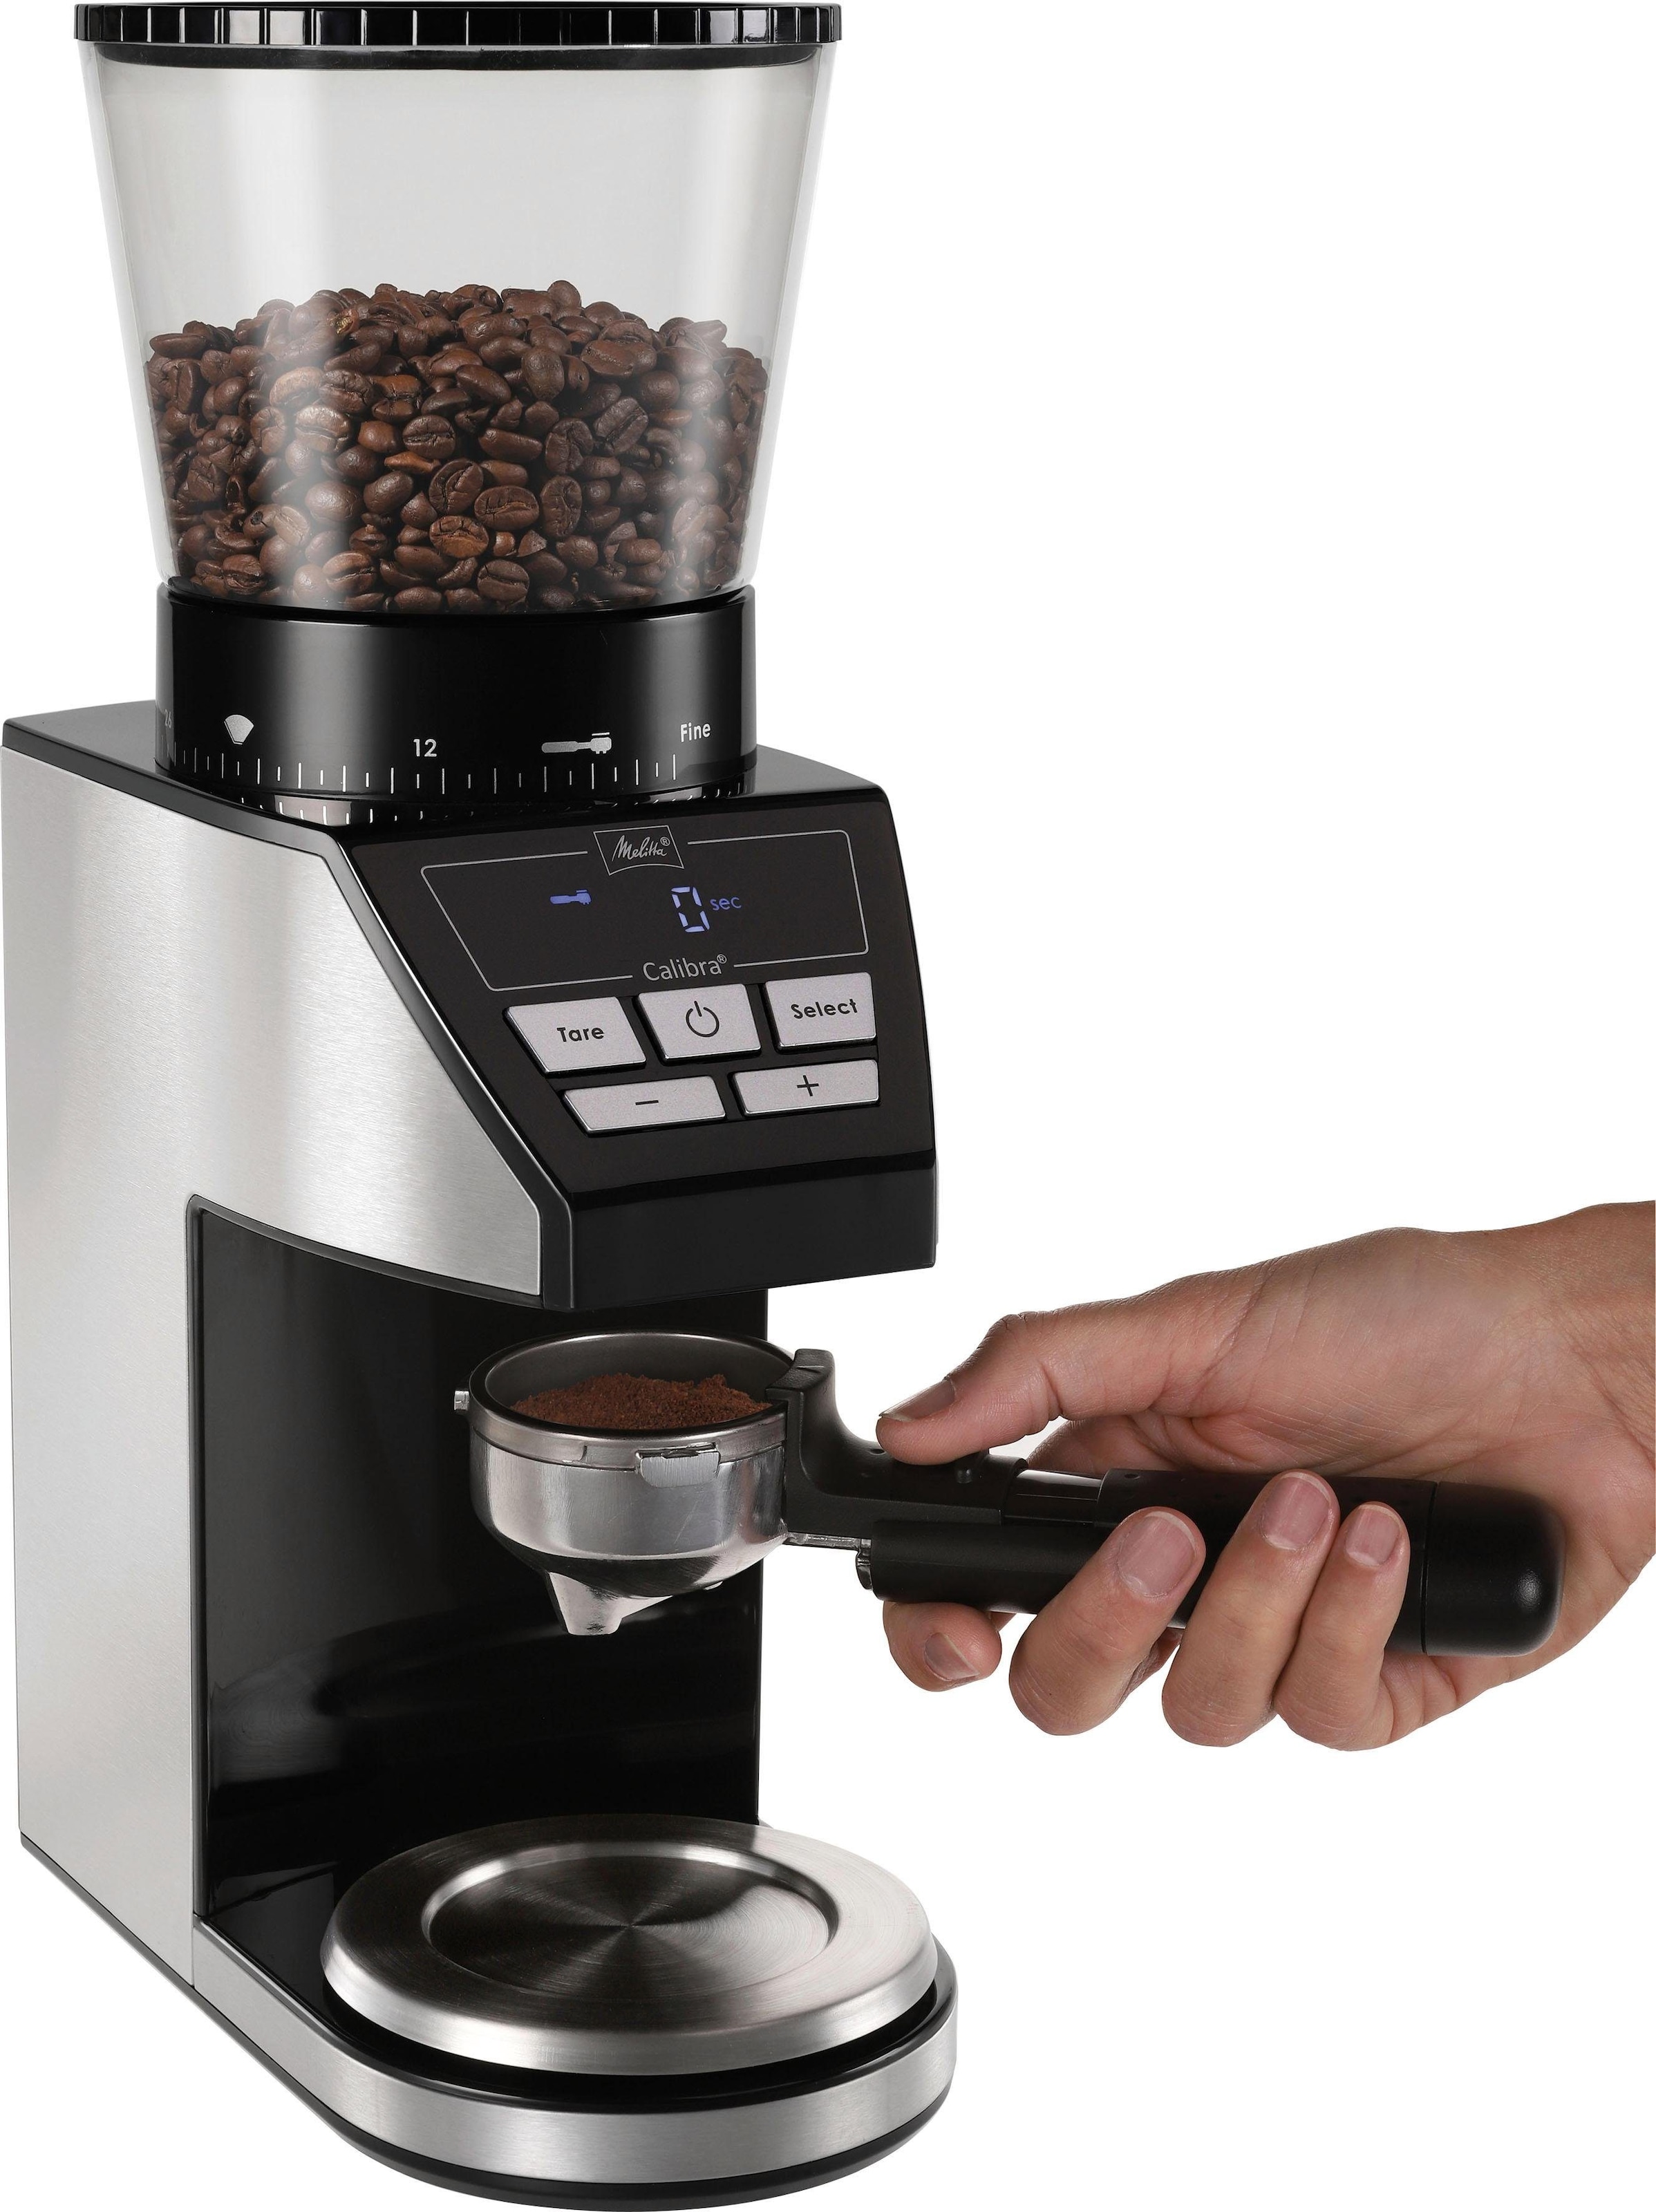 Melitta Kaffeemühle »Calibra 1027-01 schwarz-Edelstahl«, 160 W, Kegelmahlwerk, 375 g Bohnenbehälter